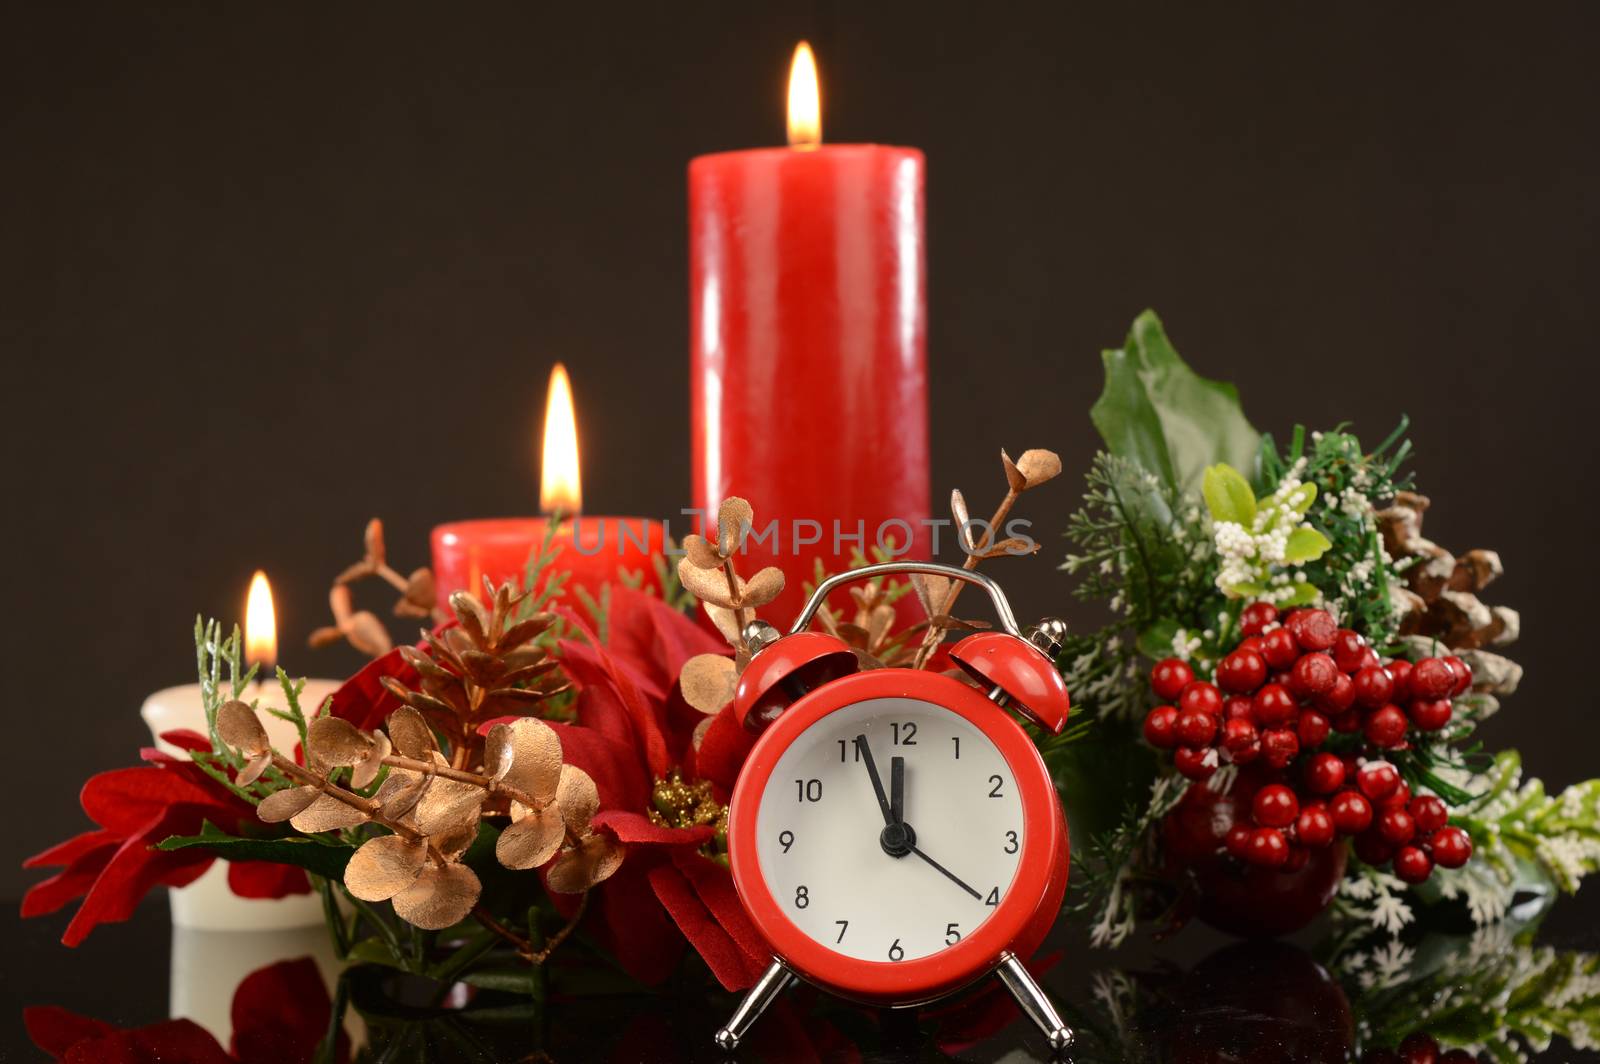 A festive scene with an alarm clock for the Christmas season.